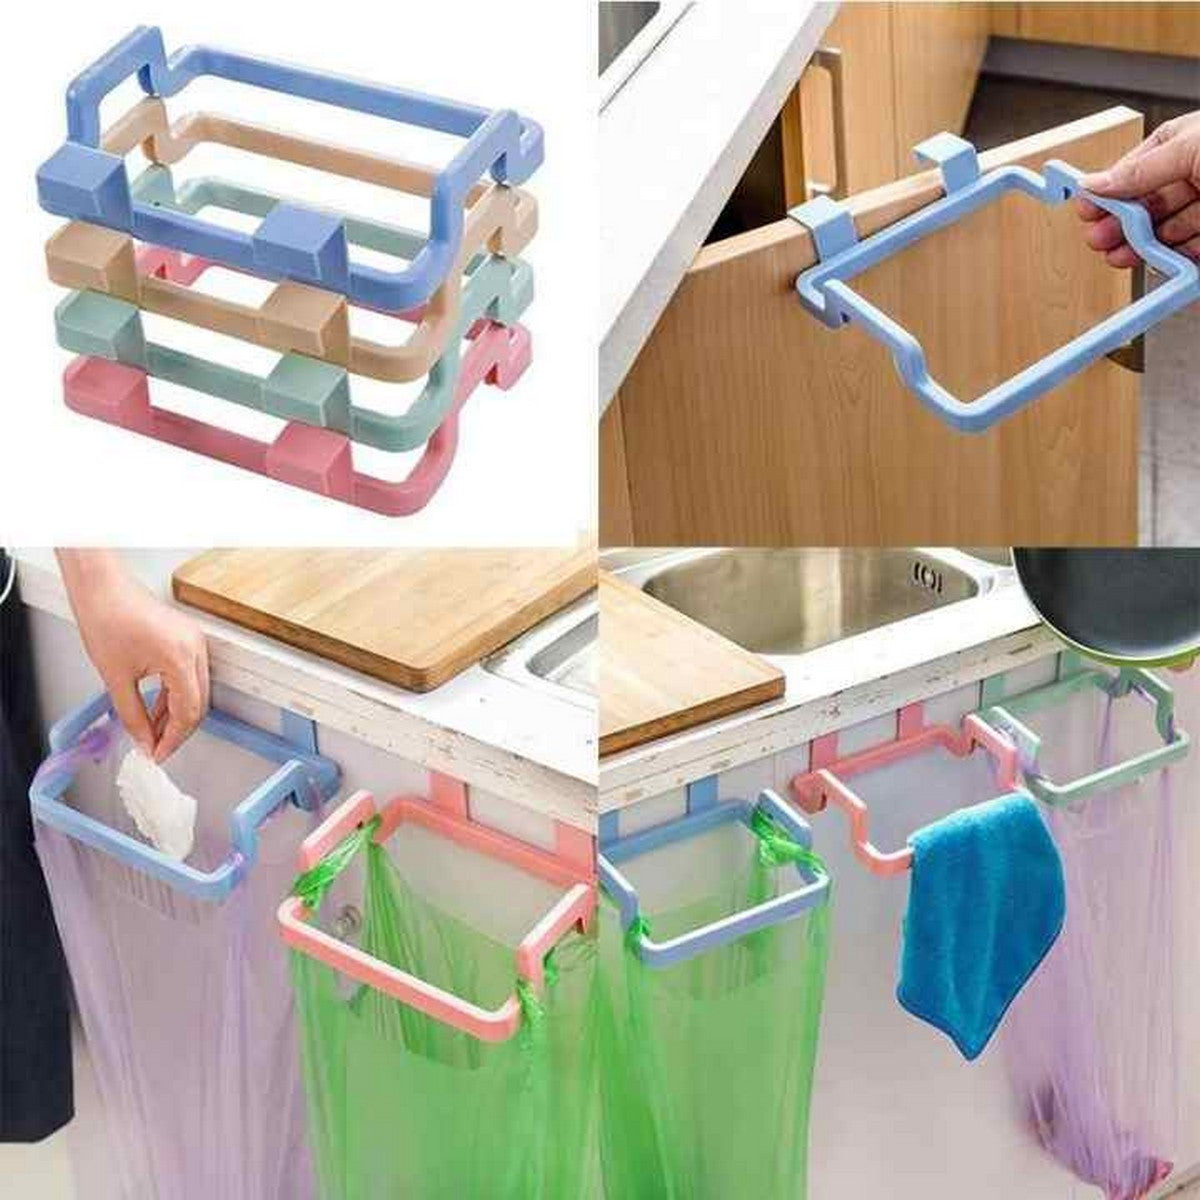 2 Pcs Plastic Garbage Bag Holder, Dustbin,Towel Rack For Kitchen